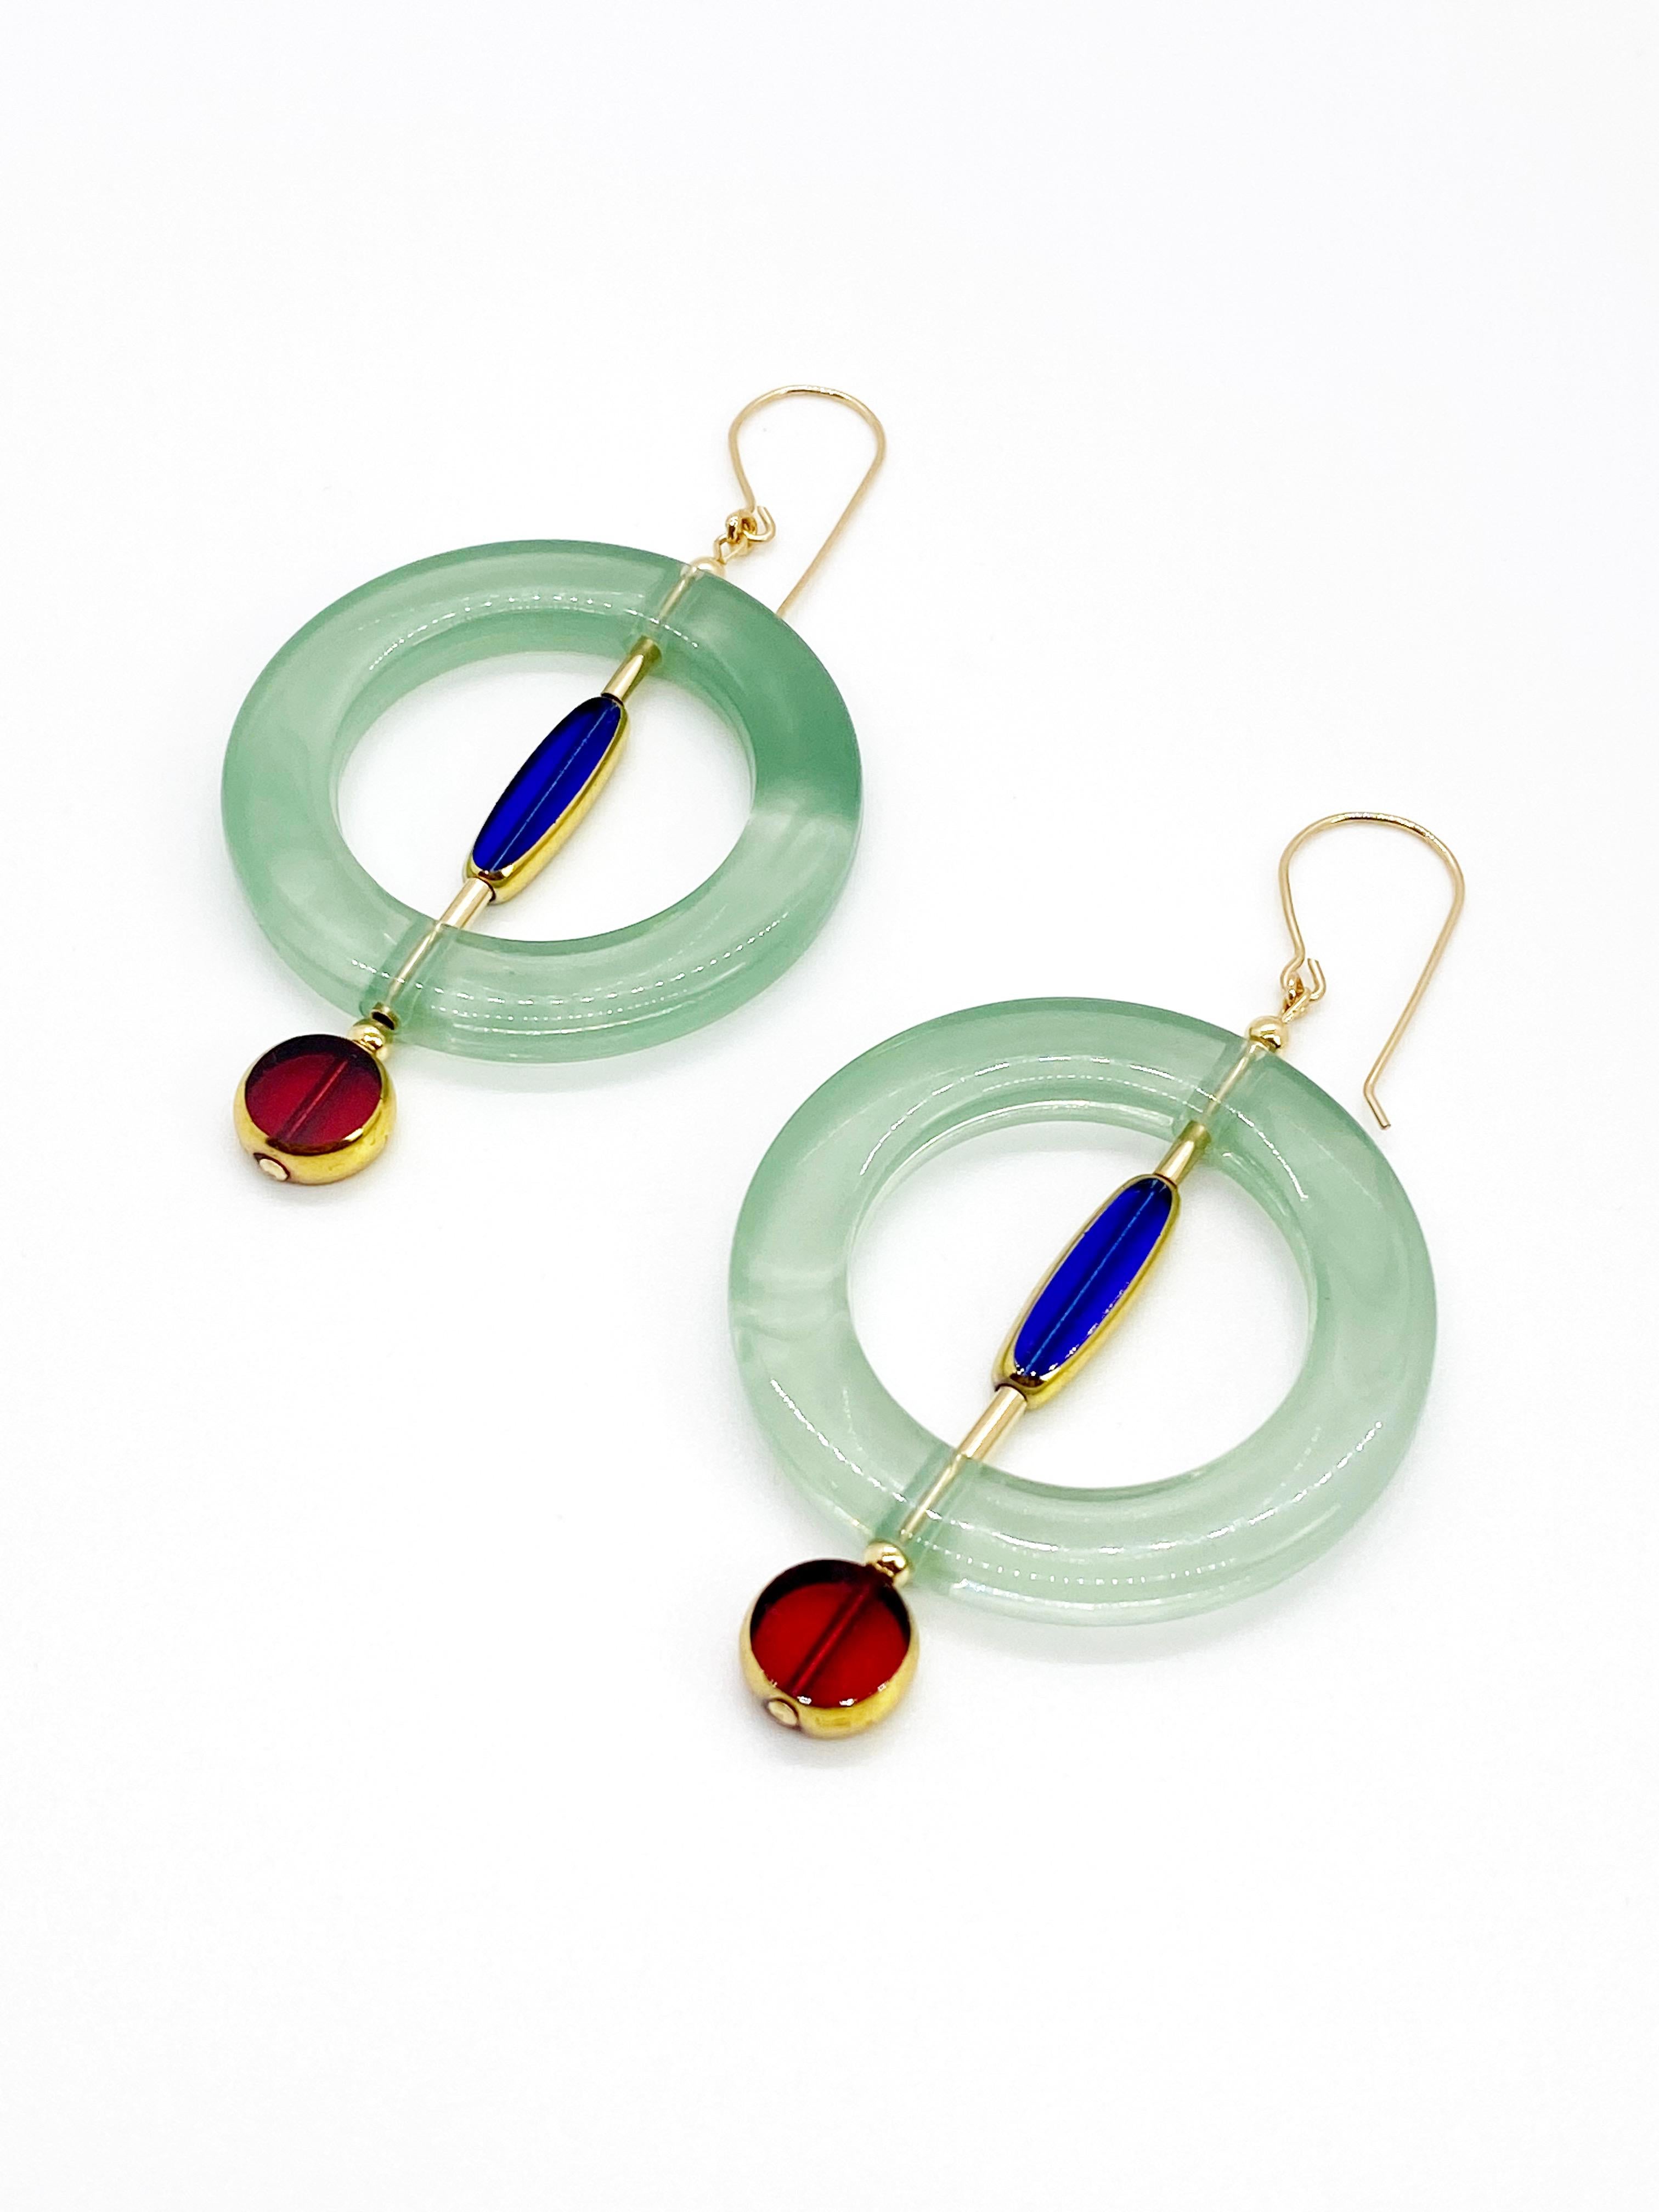 Chaque boucle d'oreille est composée de 2 perles de verre vintage allemand translucides qui sont encadrées d'or 24K avec un anneau de lucite vintage. Elles sont rehaussées de perles rondes et de perles tubulaires remplies d'or. Les boucles